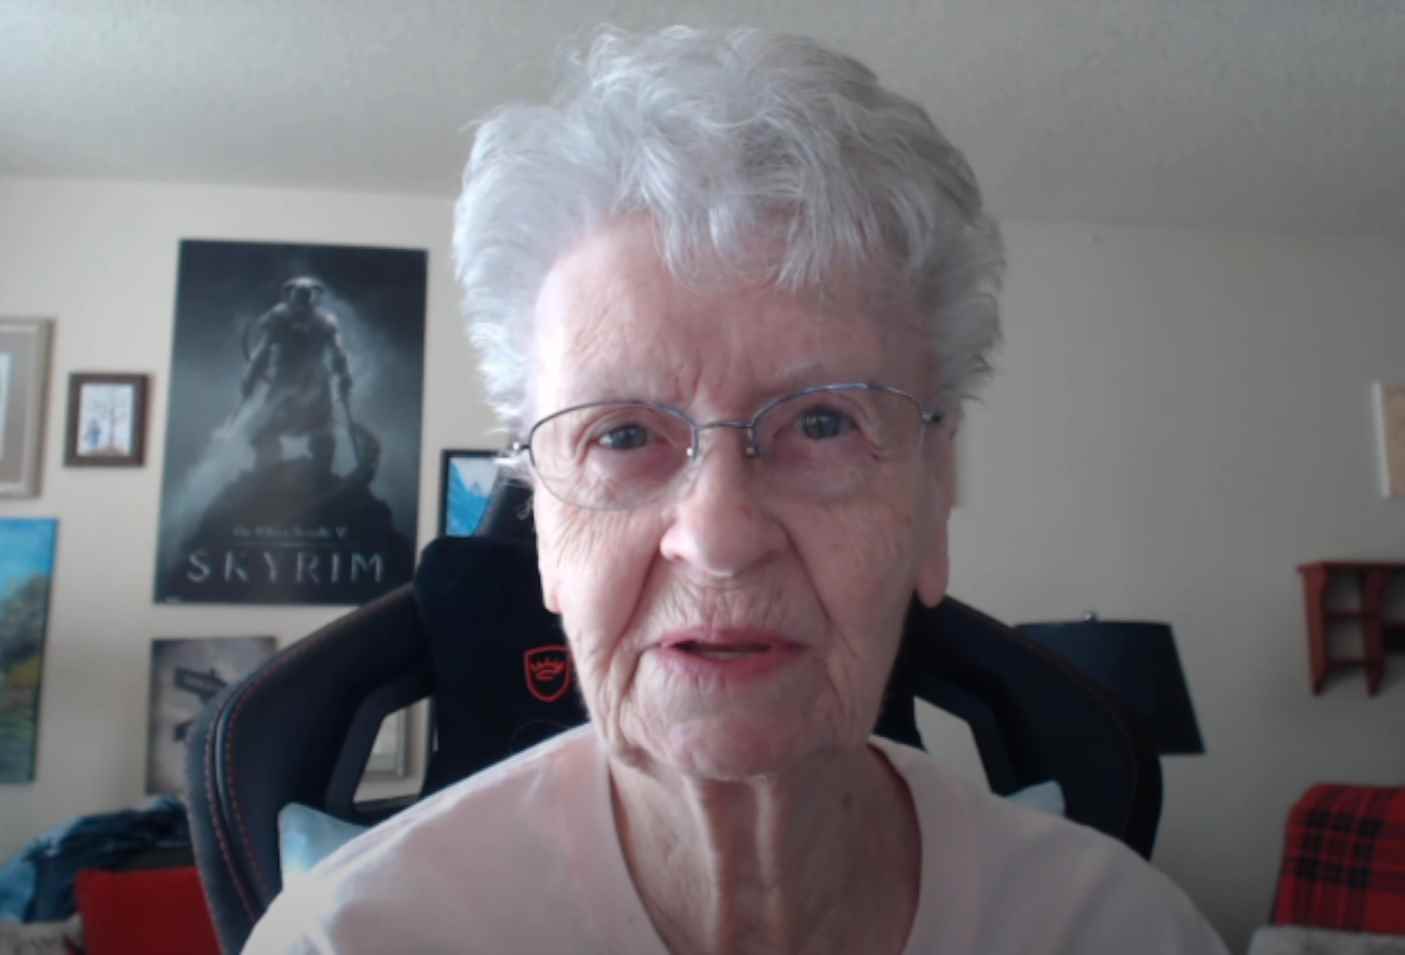 Starfield Skyrim Büyükanne: Skyrim Büyükanne olarak da bilinen bir YouTuber, Shirley Curry, kameraya konuşuyor